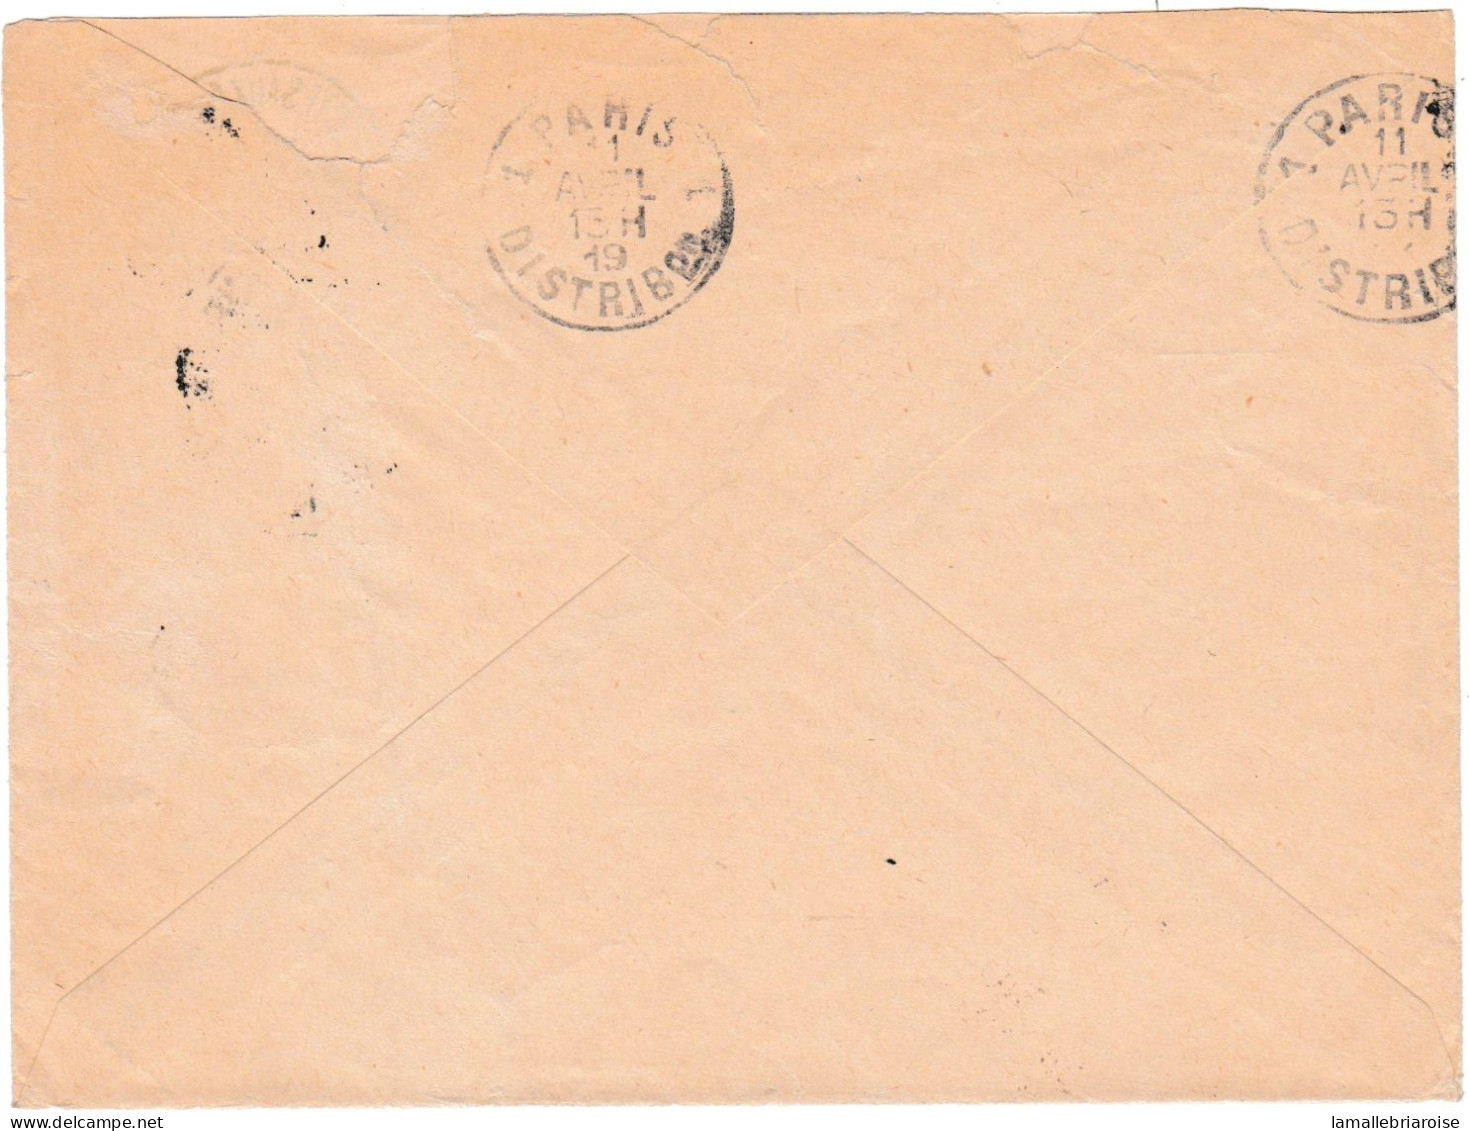 Lettre Avec Courrier (texte Interressant) Avec Cachet: Troupes D'occupation Du Maroc Occidental, Casablanca - 1. Weltkrieg 1914-1918